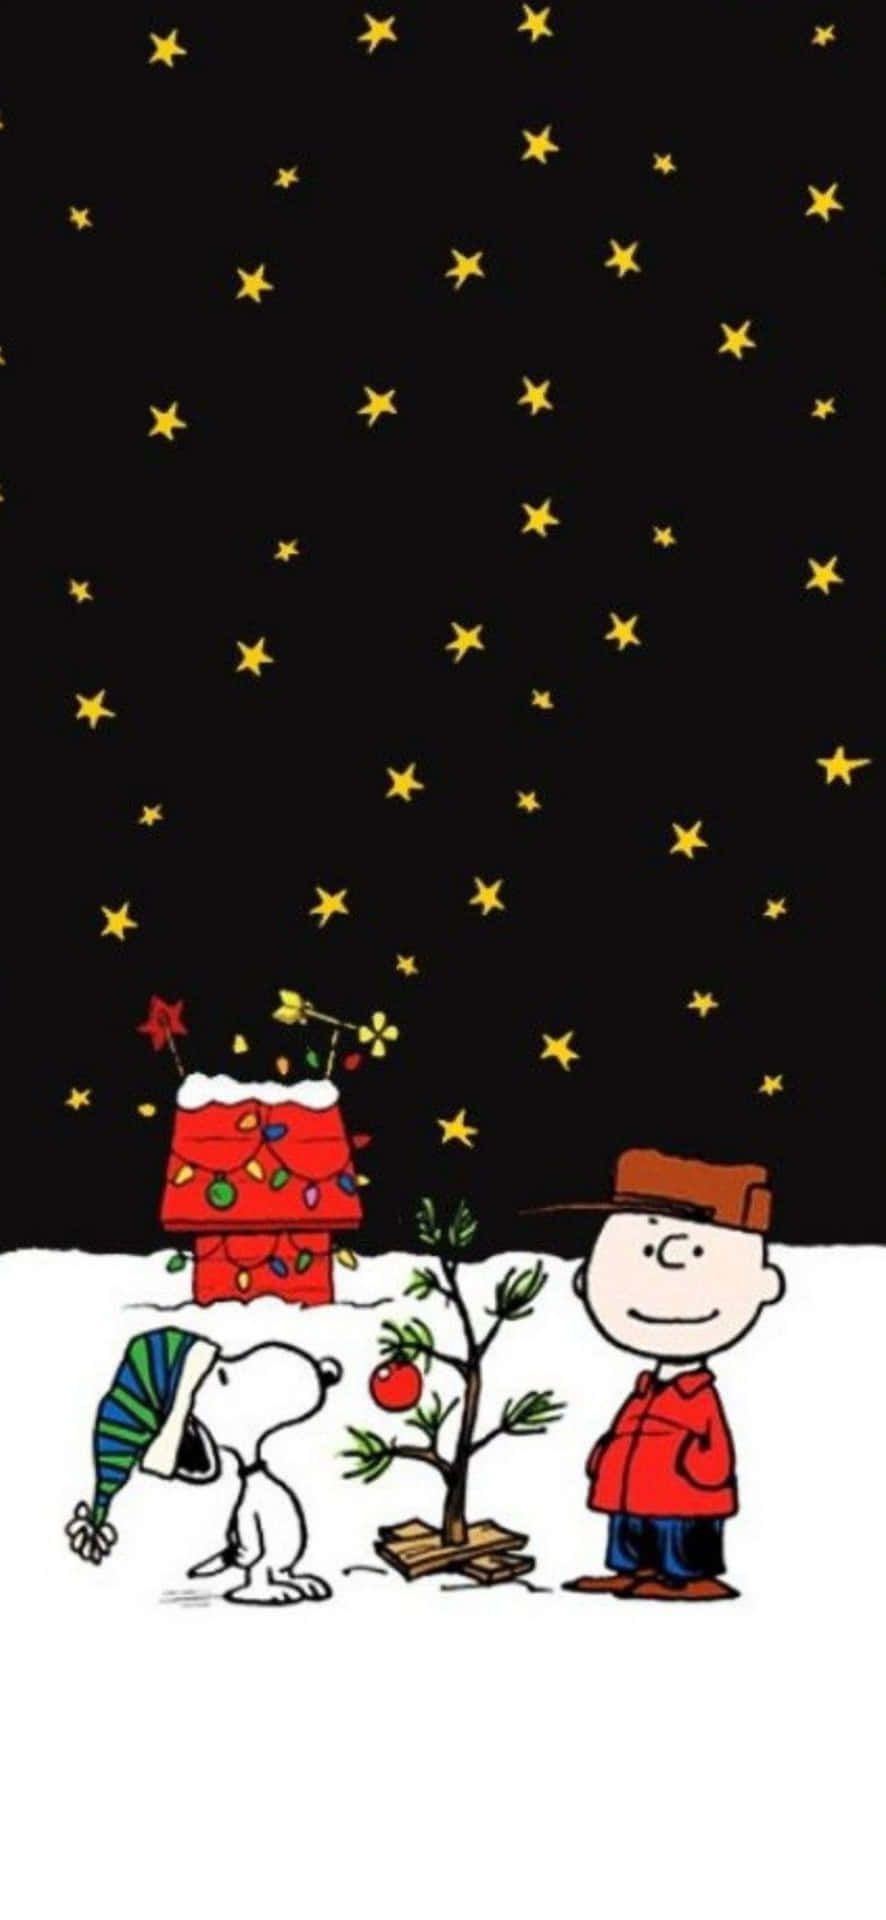 Feiernsie Weihnachten Mit Freude Und Fröhlichkeit, Während Sie Ihre Lieblings-weihnachtslieder Auf Ihrem Iphone Hören!